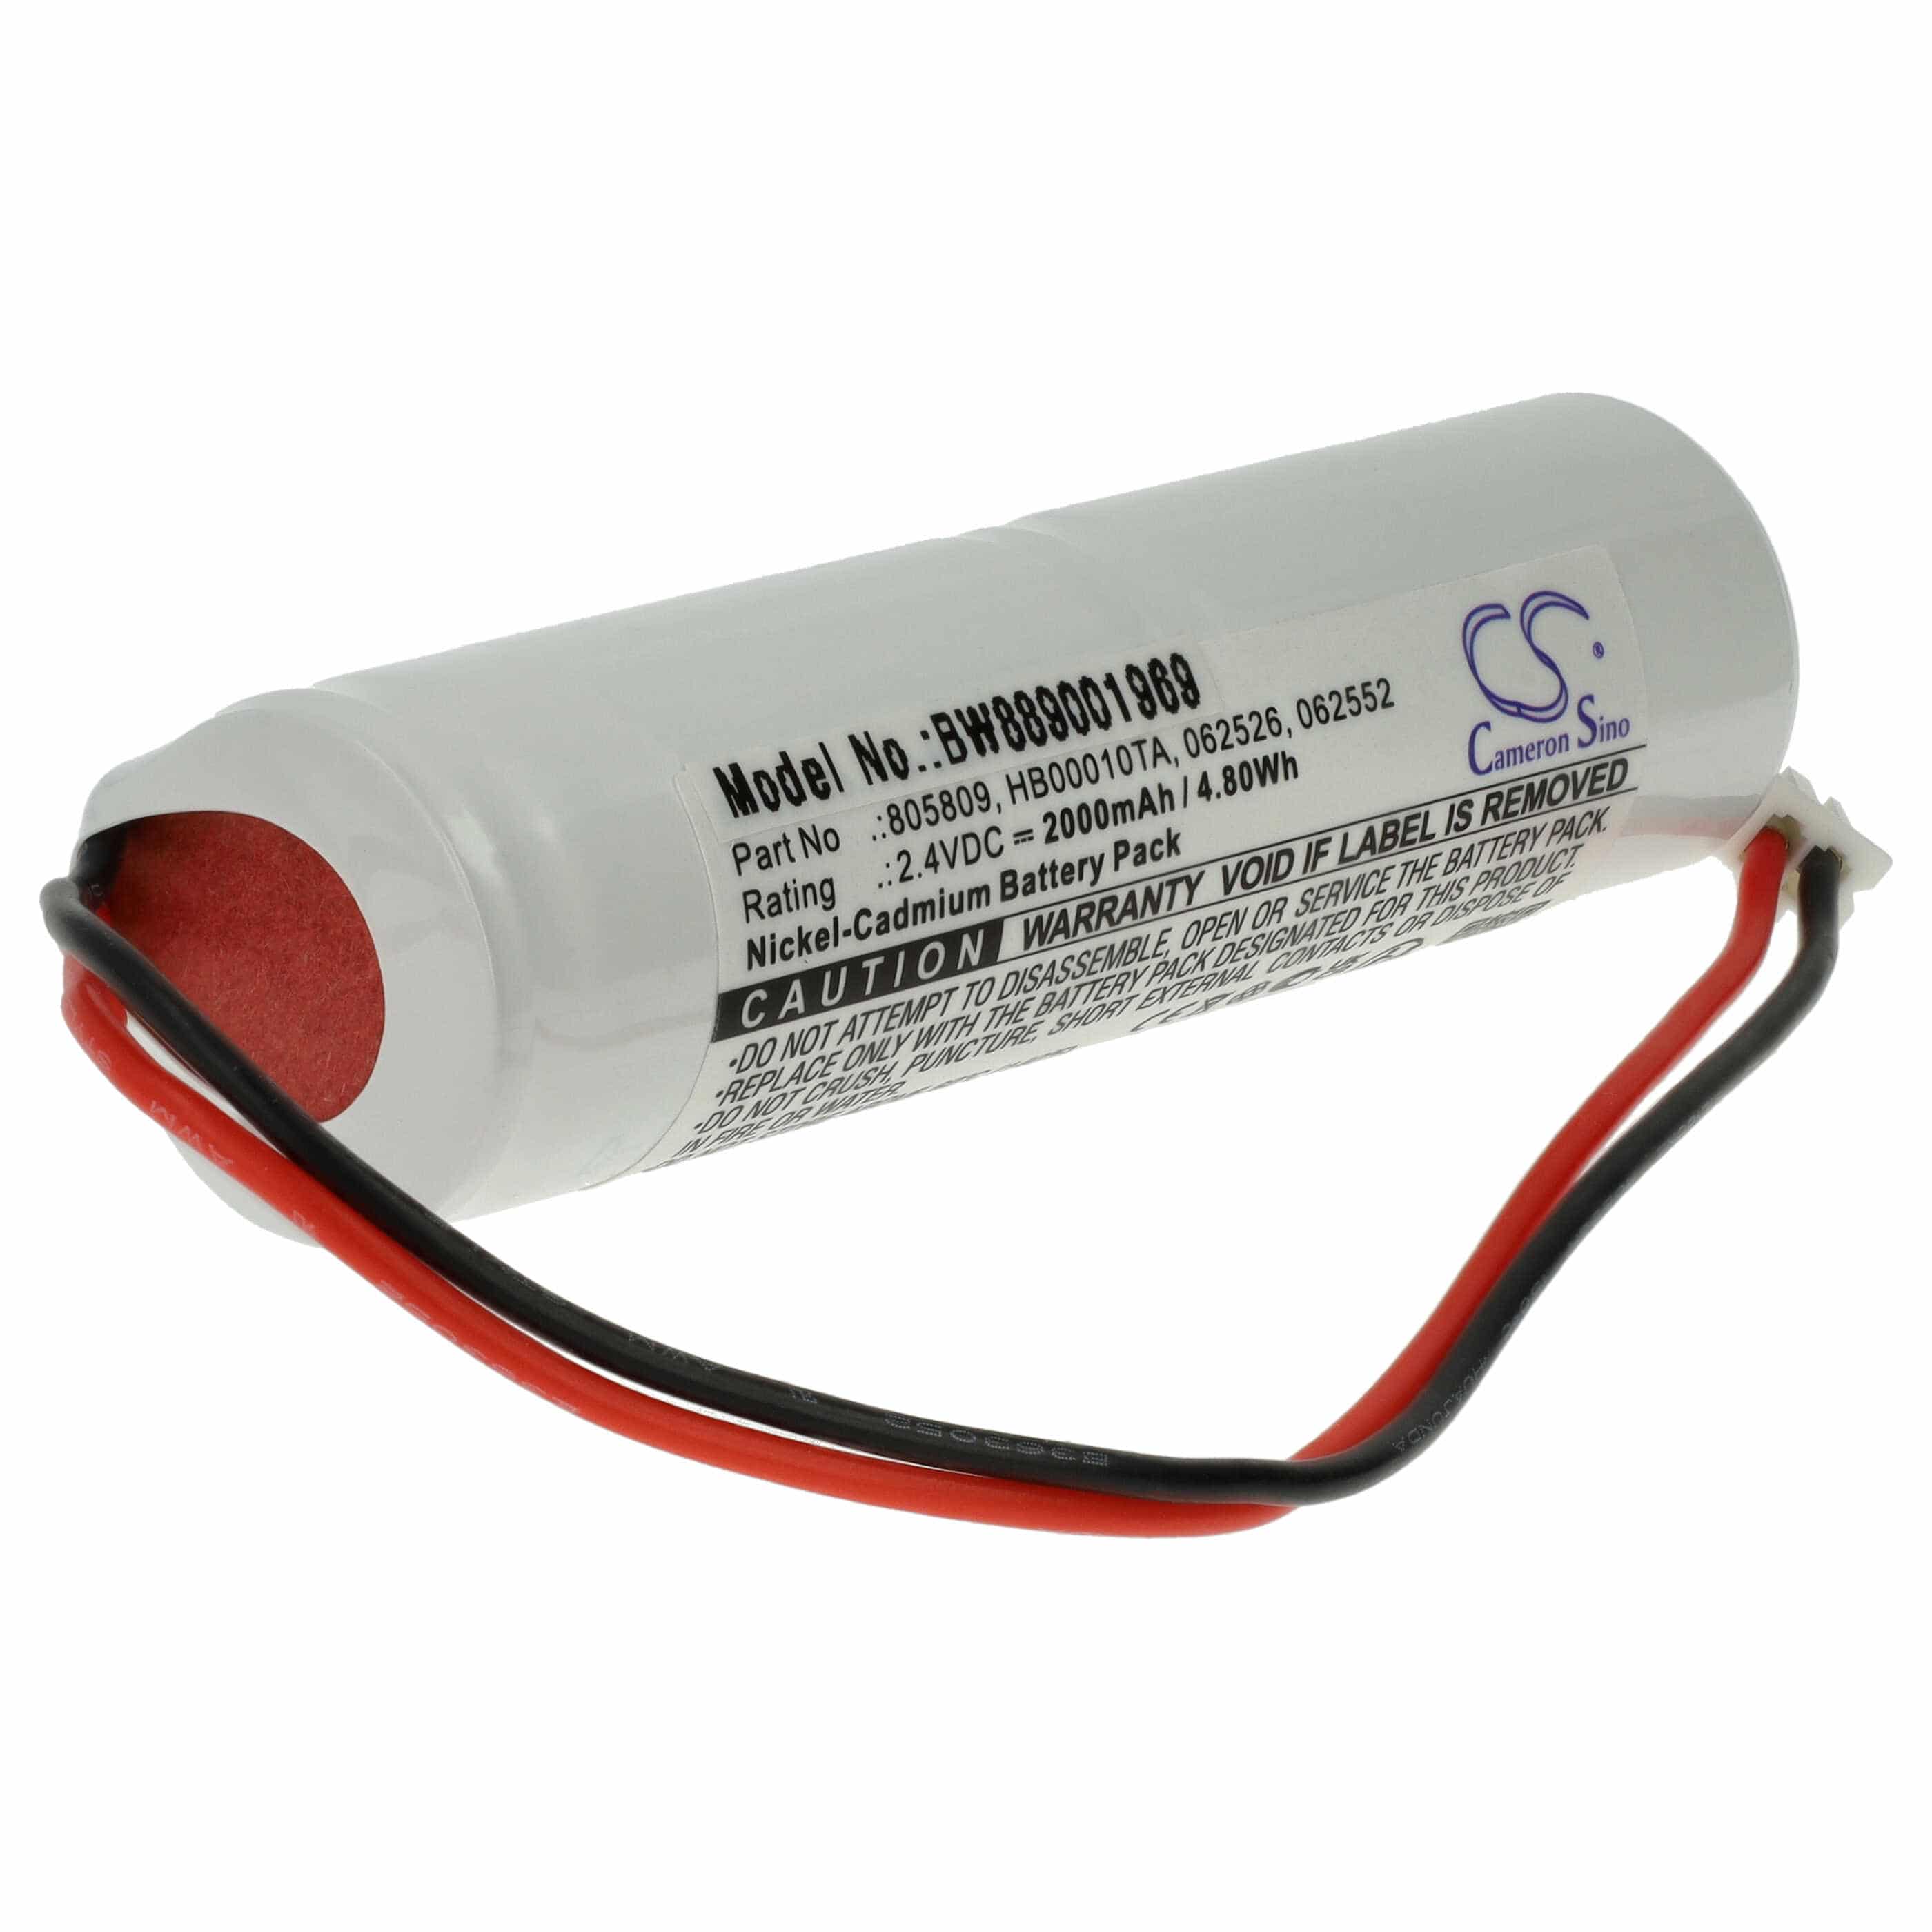 Batterie remplace Legrand 062552, 062526, 805809, 061092 pour éclairage de secours - 2000mAh 2,4V NiCd